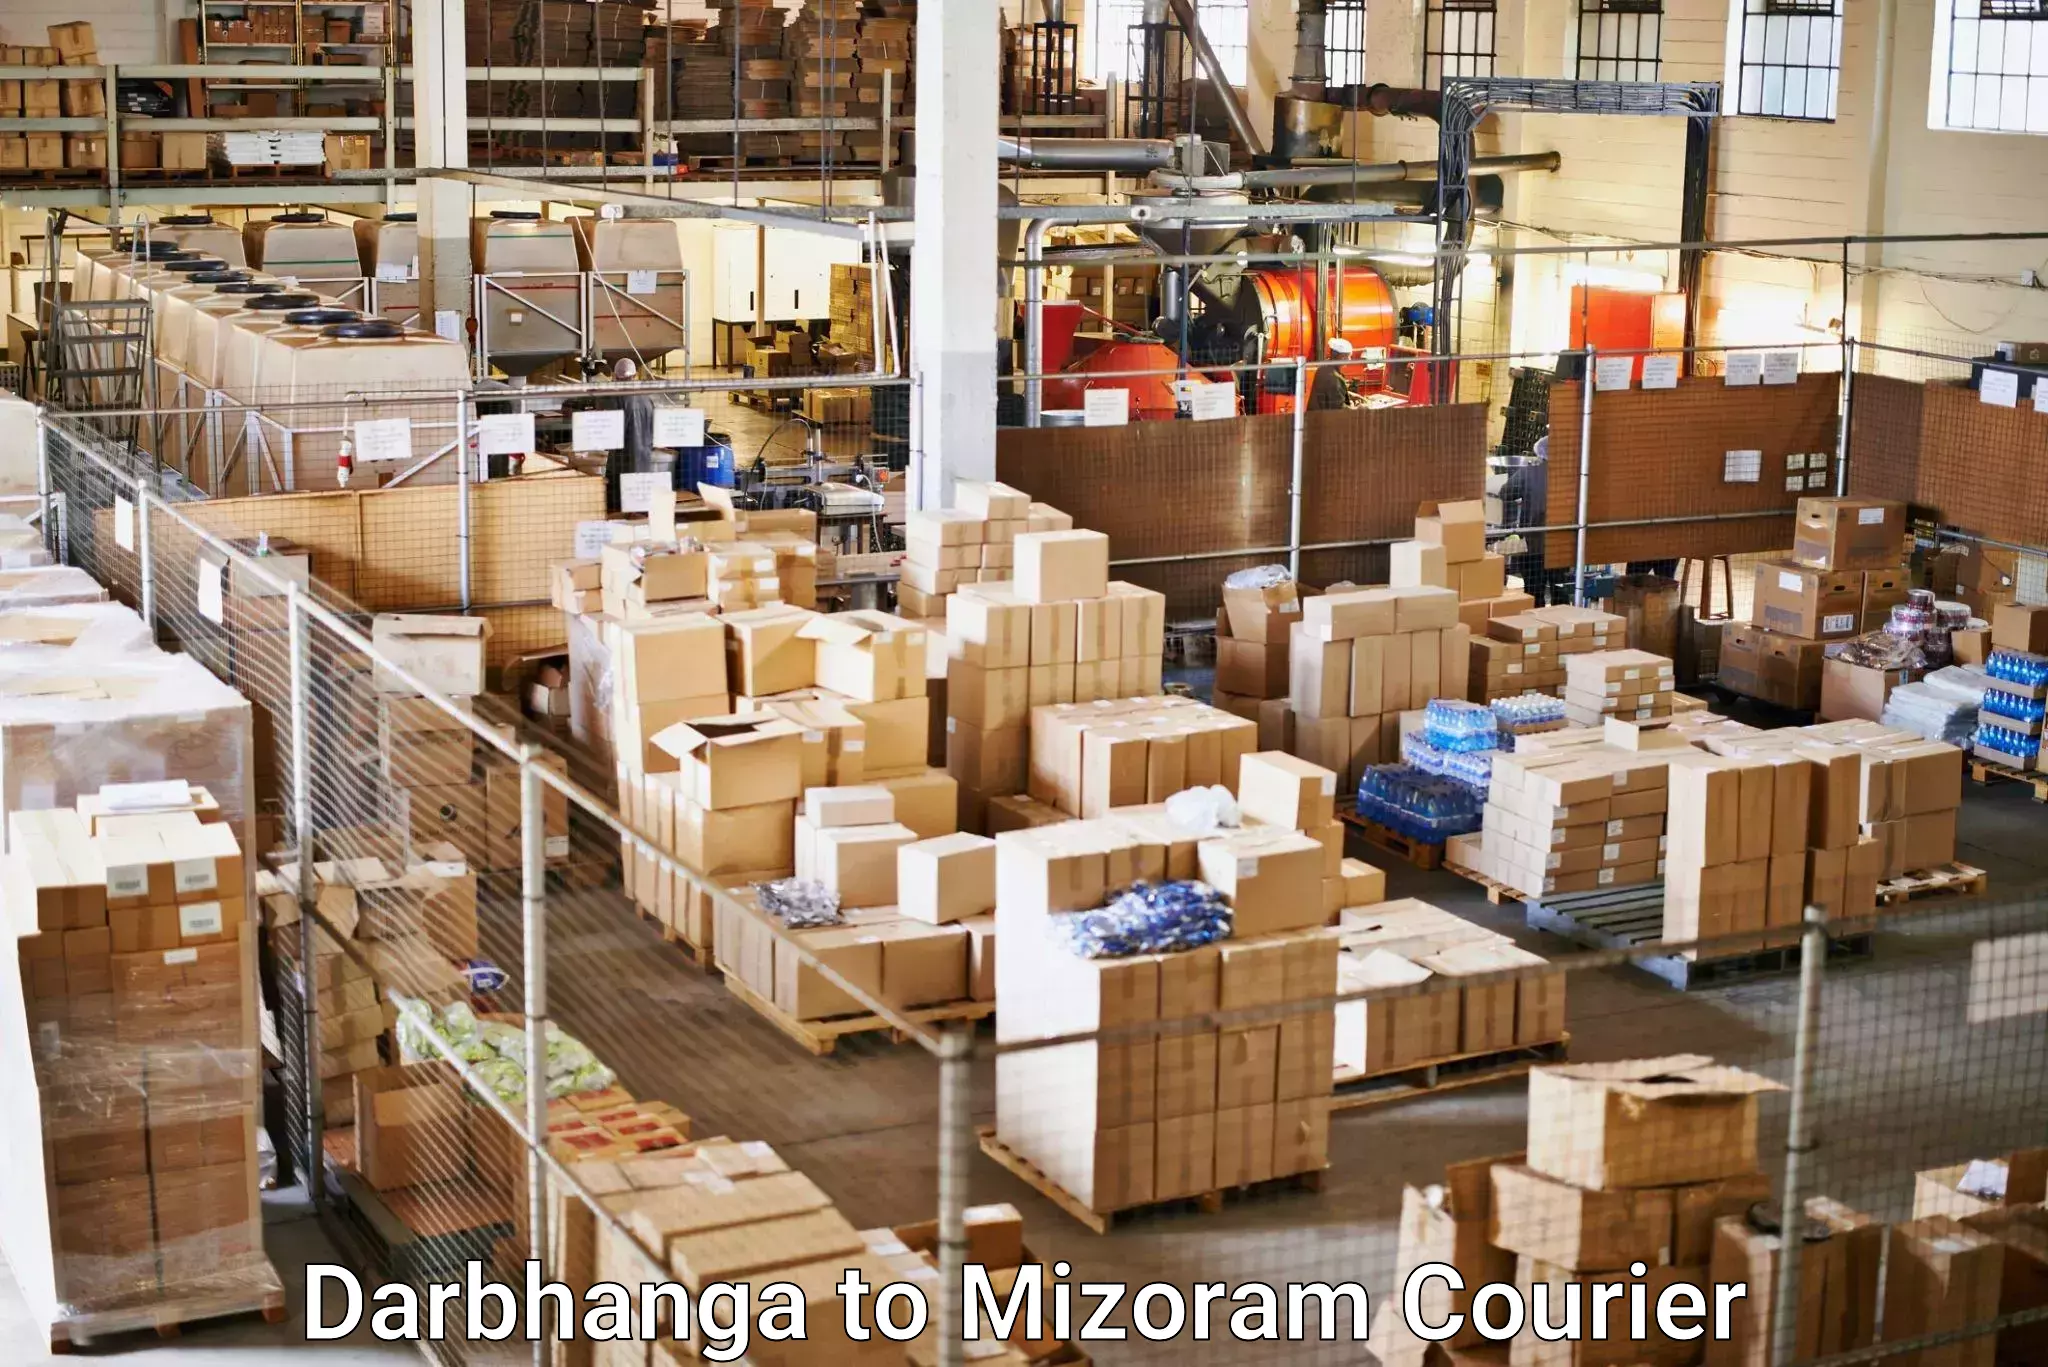 Express logistics service Darbhanga to Mizoram